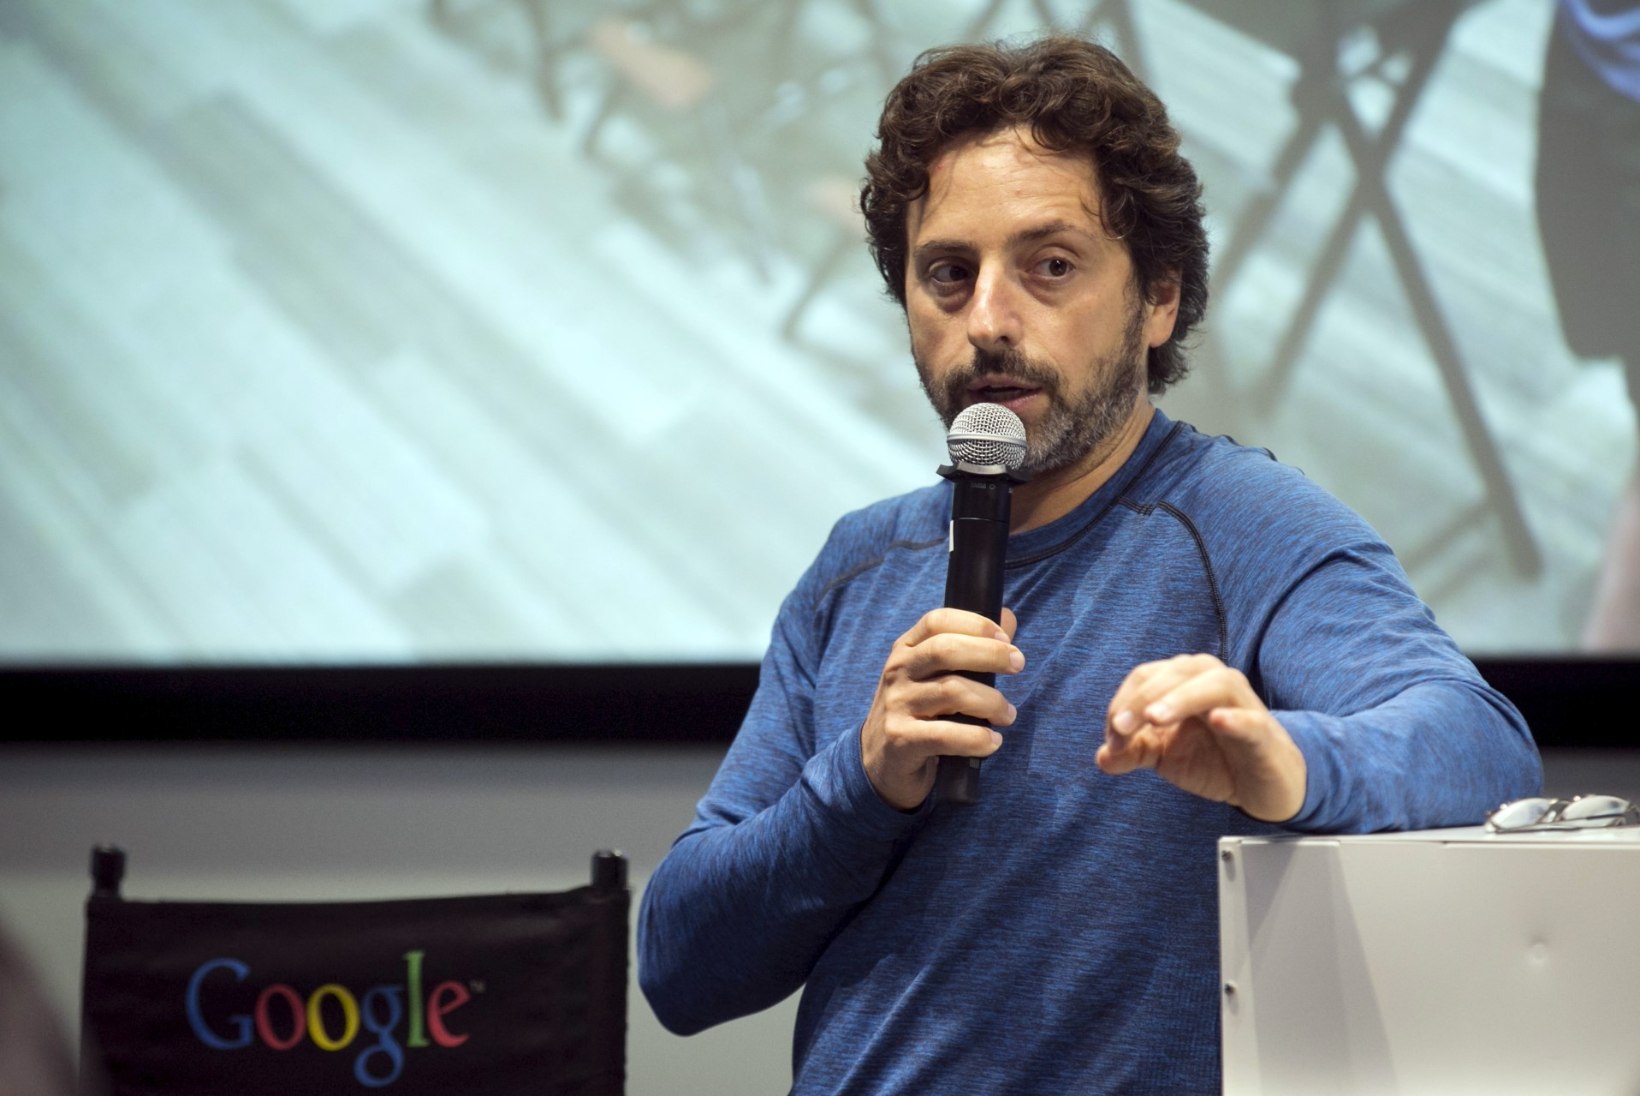 Google'i asutaja Sergey Brin on vargsi naise võtnud ja isaks saanud